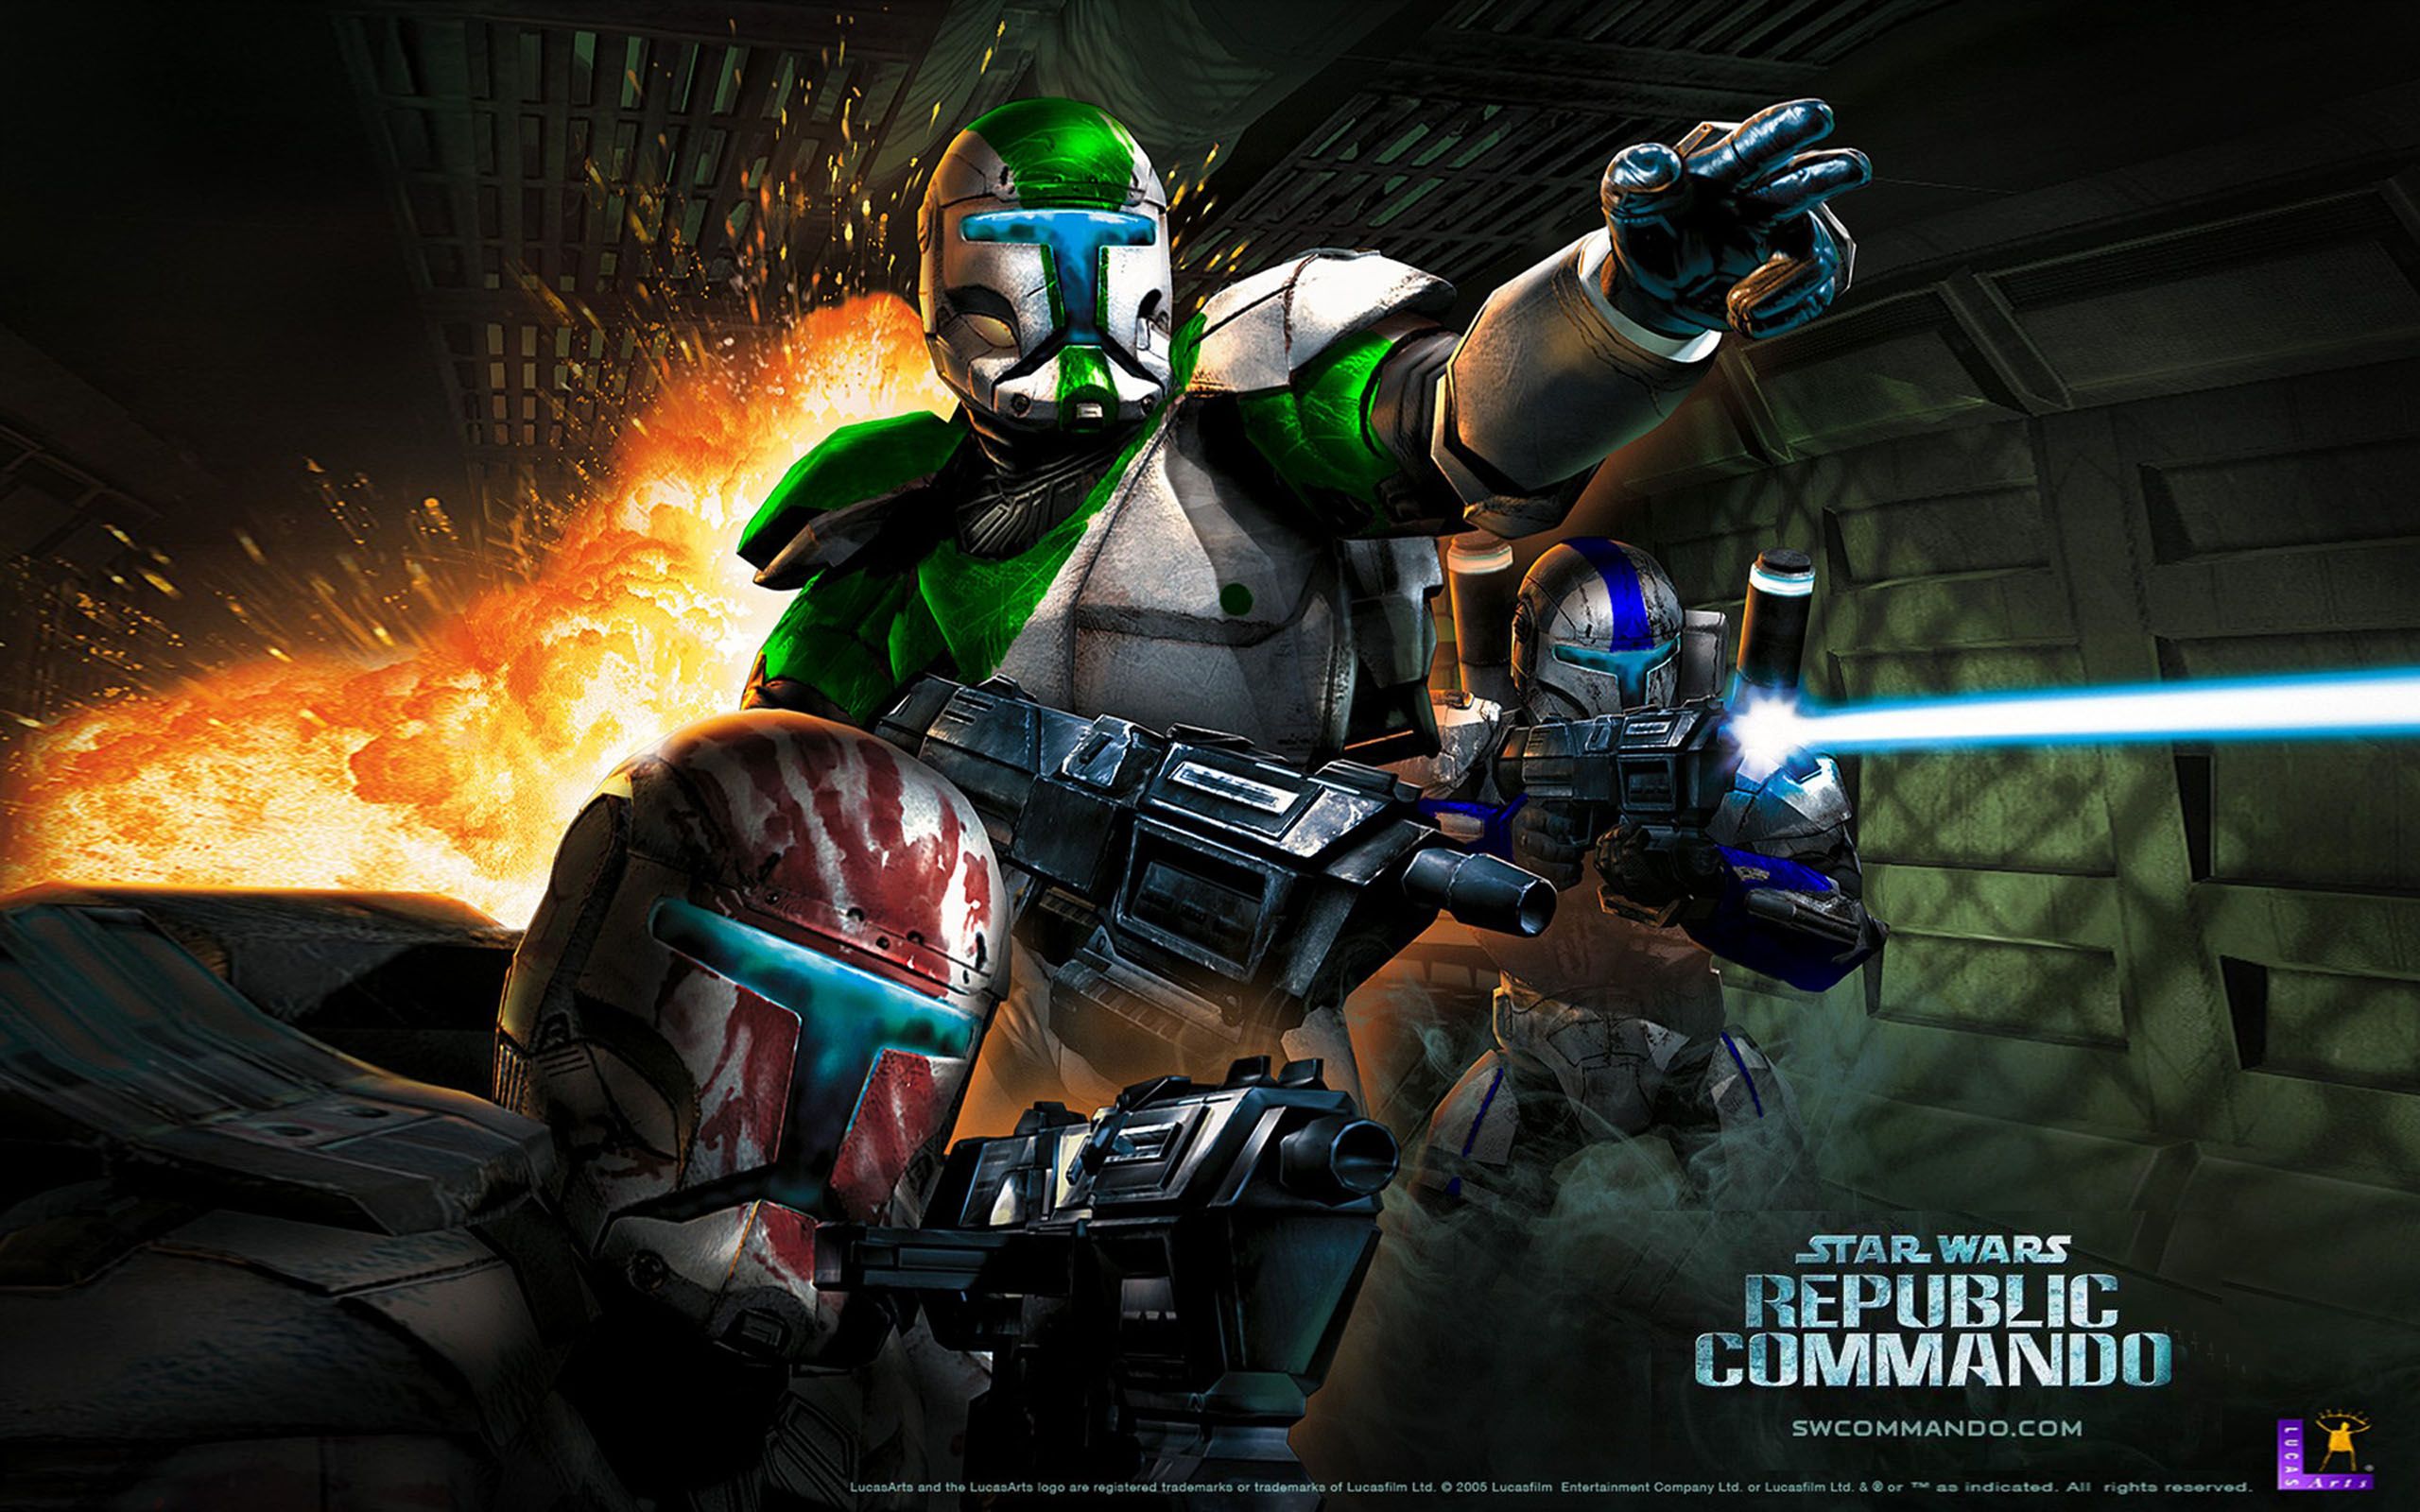 Star Wars Republic Commando Video Game Wallpaper HD, Wallpaper13.com